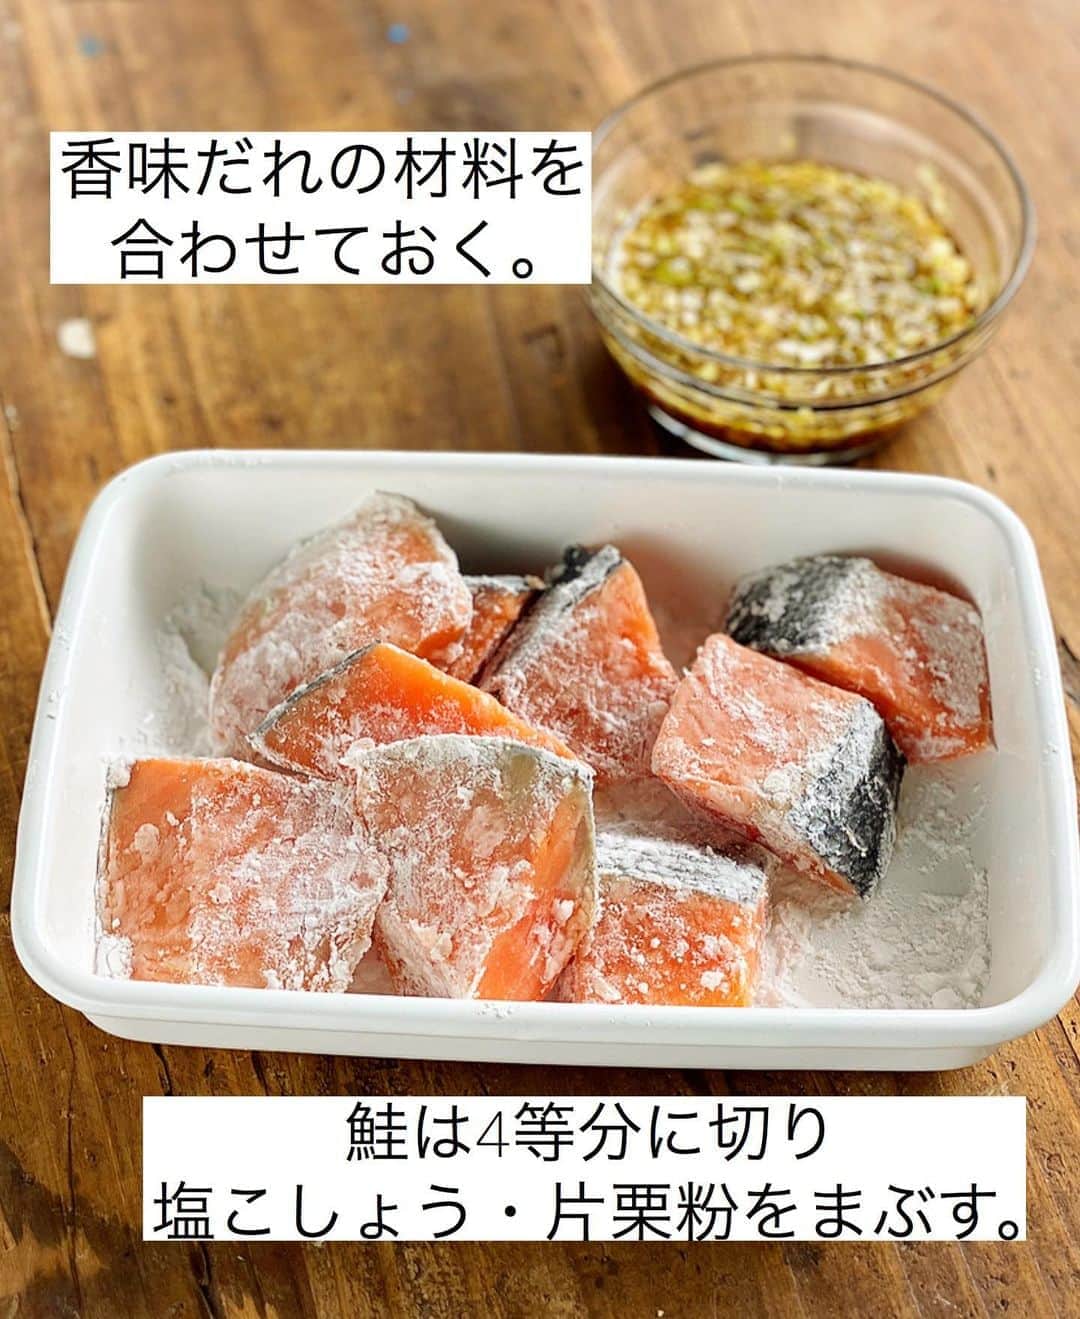 Mizuki【料理ブロガー・簡単レシピ】さんのインスタグラム写真 - (Mizuki【料理ブロガー・簡単レシピ】Instagram)「・﻿ 【レシピ】ーーーーーーーー﻿ ♡焼き鮭の香味だれがけ♡﻿ ーーーーーーーーーーーーー﻿ ﻿ ﻿ ﻿ おはようございます(*^^*)﻿ ﻿ 今日ご紹介させていただくのは﻿ リクエストいただいたお魚レシピ♩﻿ お手軽な鮭の切り身を焼いて﻿ 薬味たっぷりの香味だれをかけました♡﻿ さっぱり味で食べやすく﻿ 普通の焼き鮭より﻿ ボリュームもアップしますよ♩﻿ ﻿ フライパンで簡単にできるので﻿ よかったらお試し下さいね(*´艸`)﻿ ﻿ ﻿ ﻿ ＿＿＿＿＿＿＿＿＿＿＿＿＿＿＿＿＿＿＿＿﻿ 【2人分】﻿ 生鮭...2切れ﻿ 塩...少々﻿ 片栗粉...適量﻿ サラダ油...小2﻿ ●長ねぎ(みじん切り)...10cm﻿ ●生姜(みじん切り)...1/3かけ﻿ ●醤油・酢...各大1﻿ ●砂糖・ごま油...各大1/2﻿ サニーレタス...適量﻿ ﻿ 1.●を合わせて香味だれを作る。鮭は4等分に切り、塩を振って片栗粉をまぶす。﻿ 2.フライパンにサラダ油を中火で熱し、鮭を両面焼いて火を通す。﻿ 3.器にちぎったレタスと2を盛り付け、香味だれをかける。﻿ ￣￣￣￣￣￣￣￣￣￣￣￣￣￣￣￣￣￣￣￣﻿ ﻿ ﻿ ﻿ 《ポイント》﻿ ♦︎サーモンの切り身で作っても♩﻿ ♦︎塩鮭だと辛くなるので''生鮭''をご使用下さい♩﻿ ﻿ ﻿ ﻿ ﻿ ﻿ ﻿ _____________________________________﻿ 💓新刊予約開始しました💓﻿ Amazon予約キャンペーン実施中🎁﻿ ￣￣￣￣￣￣￣￣￣￣￣￣￣￣￣￣￣﻿ \15分でいただきます/﻿ #Mizukiの2品献立﻿ (9月24日発売・マガジンハウス)﻿ ﻿ 忙しい私たちには﻿ 2品くらいがちょうどいい！﻿ 『しんどくない献立、考えました』﻿ ￣￣￣￣￣￣￣￣￣￣￣￣￣￣￣￣﻿ ﻿ メインはフライパン﻿ 副菜はレンジ(又は和えるだけ)の2品献立💕﻿ メインを作っている合間にできる﻿ レンチン副菜を組み合わせることで﻿ 15分で2品が同時に完成します！﻿ (別腹デザートも掲載😂)﻿ ﻿ ﻿ 【contents】﻿ ーーーーーPART.1 ーーーーー﻿ 【Mizukiのお墨つき！２品献立ベスト10】﻿ 約15分でできる10献立をご紹介！﻿ メインは全部フライパン、副菜はレンチンor混ぜるだけ♡﻿ ﻿ ーーーーーPART.2 ーーーーー﻿ 【フライパンひとつ！今夜のメインおかず】﻿ 献立の主役になる肉や魚のおかず50品！﻿ Part3の副菜と組み合わせれば﻿ 献立のバリエーションが広がりますよ♩﻿ ﻿ ーーーーー PART.3 ーーーーー﻿ 【合間に作れる！ 野菜別かんたん副菜】﻿ レンチンor和えるだけの副菜レシピを﻿ 素材別にたっぷり収録♩﻿ ﻿ ーーーーー番外編ーーーーー﻿ 【ひとつで満足！ご飯＆麺】﻿ 【具だくさん！おかずスープ】﻿ 【オーブンいらずのおやつレシピ】﻿ ￣￣￣￣￣￣￣￣￣￣￣￣￣￣￣￣￣￣﻿ ﻿ ﻿ 🎁🎁🎁🎁🎁🎁🎁🎁🎁🎁🎁🎁﻿ Amazon予約プレゼントキャンペーン﻿ 🎁🎁🎁🎁🎁🎁🎁🎁🎁🎁🎁🎁﻿ ﻿ 皆様に感謝の気持ちを込めて﻿ ご用意させていただきました✨﻿ 私が普段から愛用している﻿ 本当に使いやすいおすすめグッズです💕﻿ ﻿ ＿＿＿＿＿＿＿＿＿＿＿＿＿＿＿＿＿﻿ 新刊【2品献立】をAmazonで予約し﻿ インスタにアップして下さった方に﻿ 抽選で［フライパン］or［ボールセット］を﻿ プレゼントさせていただきます♩﻿ ￣￣￣￣￣￣￣￣￣￣￣￣￣￣￣￣￣﻿ ﻿ ✅【インスタ応募方法▼】﻿ ①本の表紙の画像を1枚目に、﻿ Amazonで予約したことがわかる画像を﻿ 2枚目に貼り付け(どちらもスクショでOK)﻿ ［#Mizukiの2品献立 ］のハッシュタグを付けて投稿！﻿ 以上で応募完了です(*^^*)﻿ (詳しくは最後のPicをご覧下さい😊)﻿ ﻿ ￣￣￣￣￣￣￣￣￣￣￣￣￣￣￣￣￣￣﻿ ハイライトにリンク🔗あります💓﻿ ﻿ ﻿ ﻿ ﻿ ﻿ ﻿ ￣￣￣￣￣￣￣￣￣￣￣￣￣￣￣￣￣￣﻿ レシピを作って下さった際や﻿ レシピ本についてのご投稿には﻿ タグ付け( @mizuki_31cafe )して﻿ お知らせいただけると嬉しいです😊💕﻿ ＿＿＿＿＿＿＿＿＿＿＿＿＿＿＿＿＿＿﻿ ﻿ ﻿ ﻿ ﻿ ﻿ #鮭#魚#切り身#Mizuki#簡単レシピ#時短レシピ#節約レシピ#料理#レシピ#フーディーテーブル#マカロニメイト#おうちごはん#デリスタグラマー#料理好きな人と繋がりたい#食べ物#料理記録#おうちごはんlover#写真好きな人と繋がりたい#foodpic#cooking#recipe#lin_stagrammer#foodporn#yummy#f52grams#焼き鮭の香味だれがけm」9月10日 6時49分 - mizuki_31cafe